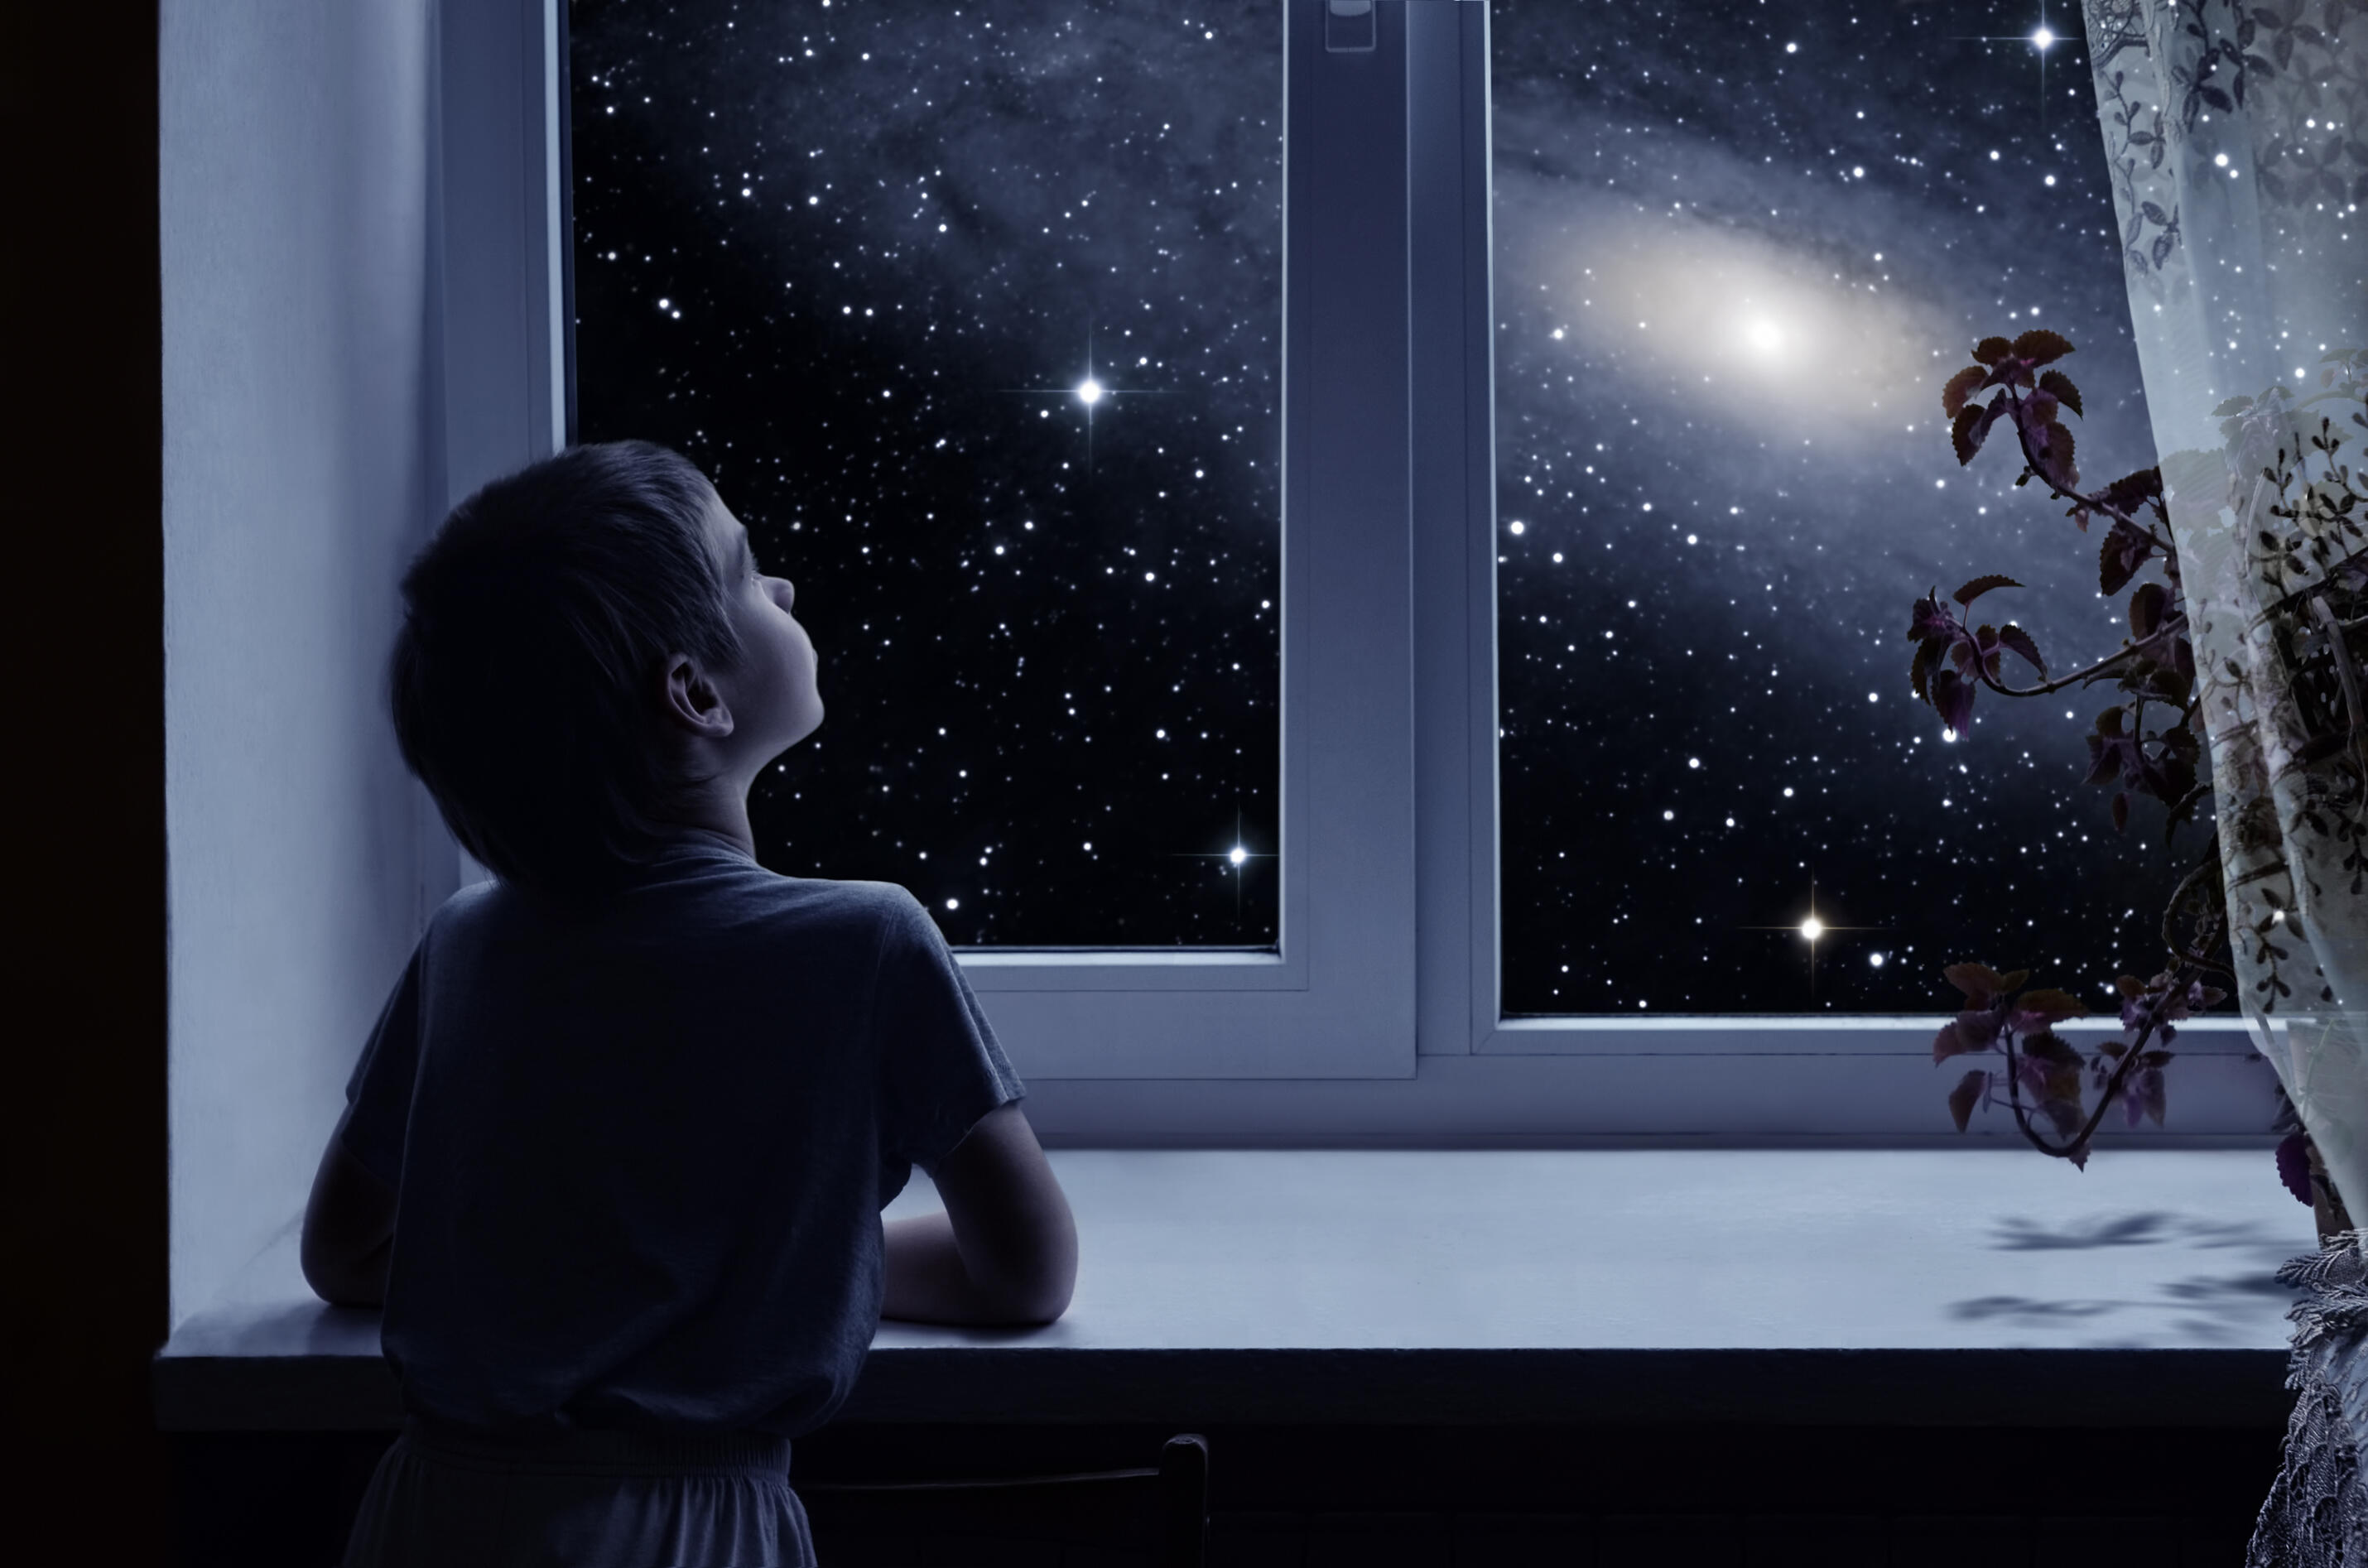 The window last night. Окно ночью. Мальчик у окна. Звезды на окна. Звездное небо в окне.